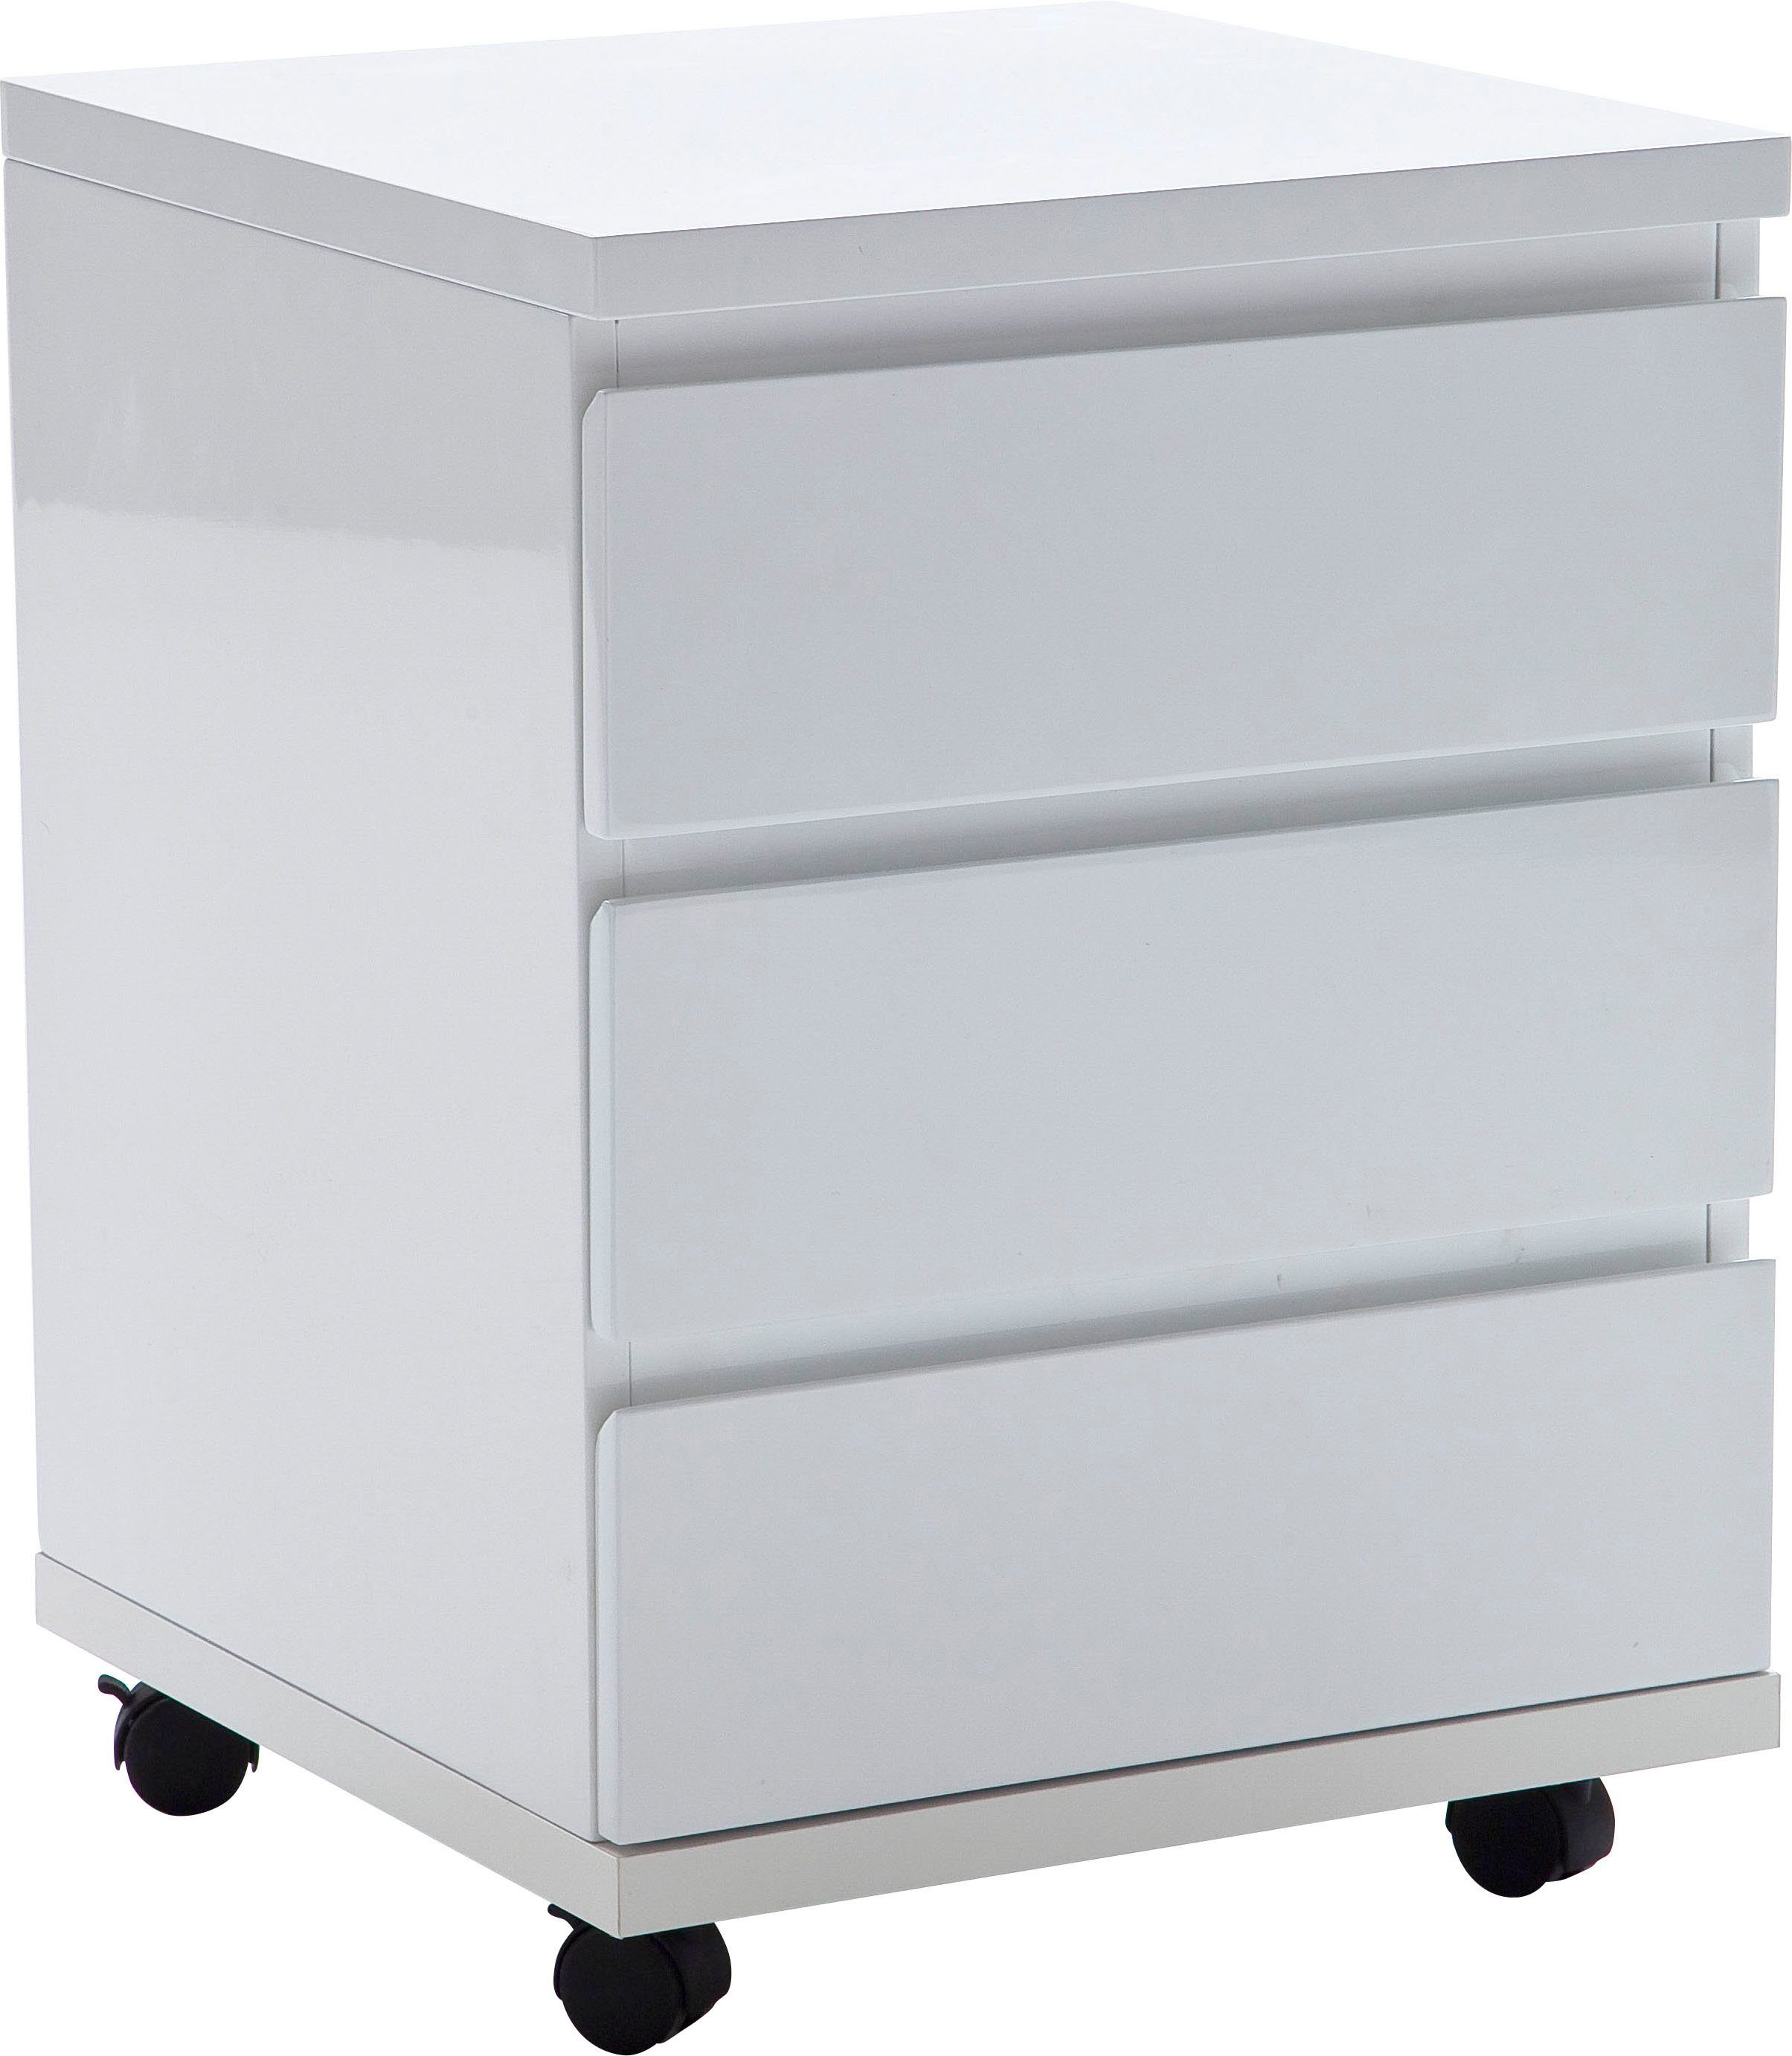 MCA furniture Rollcontainer RC, Büroschrank hochglanz weiß rollbar